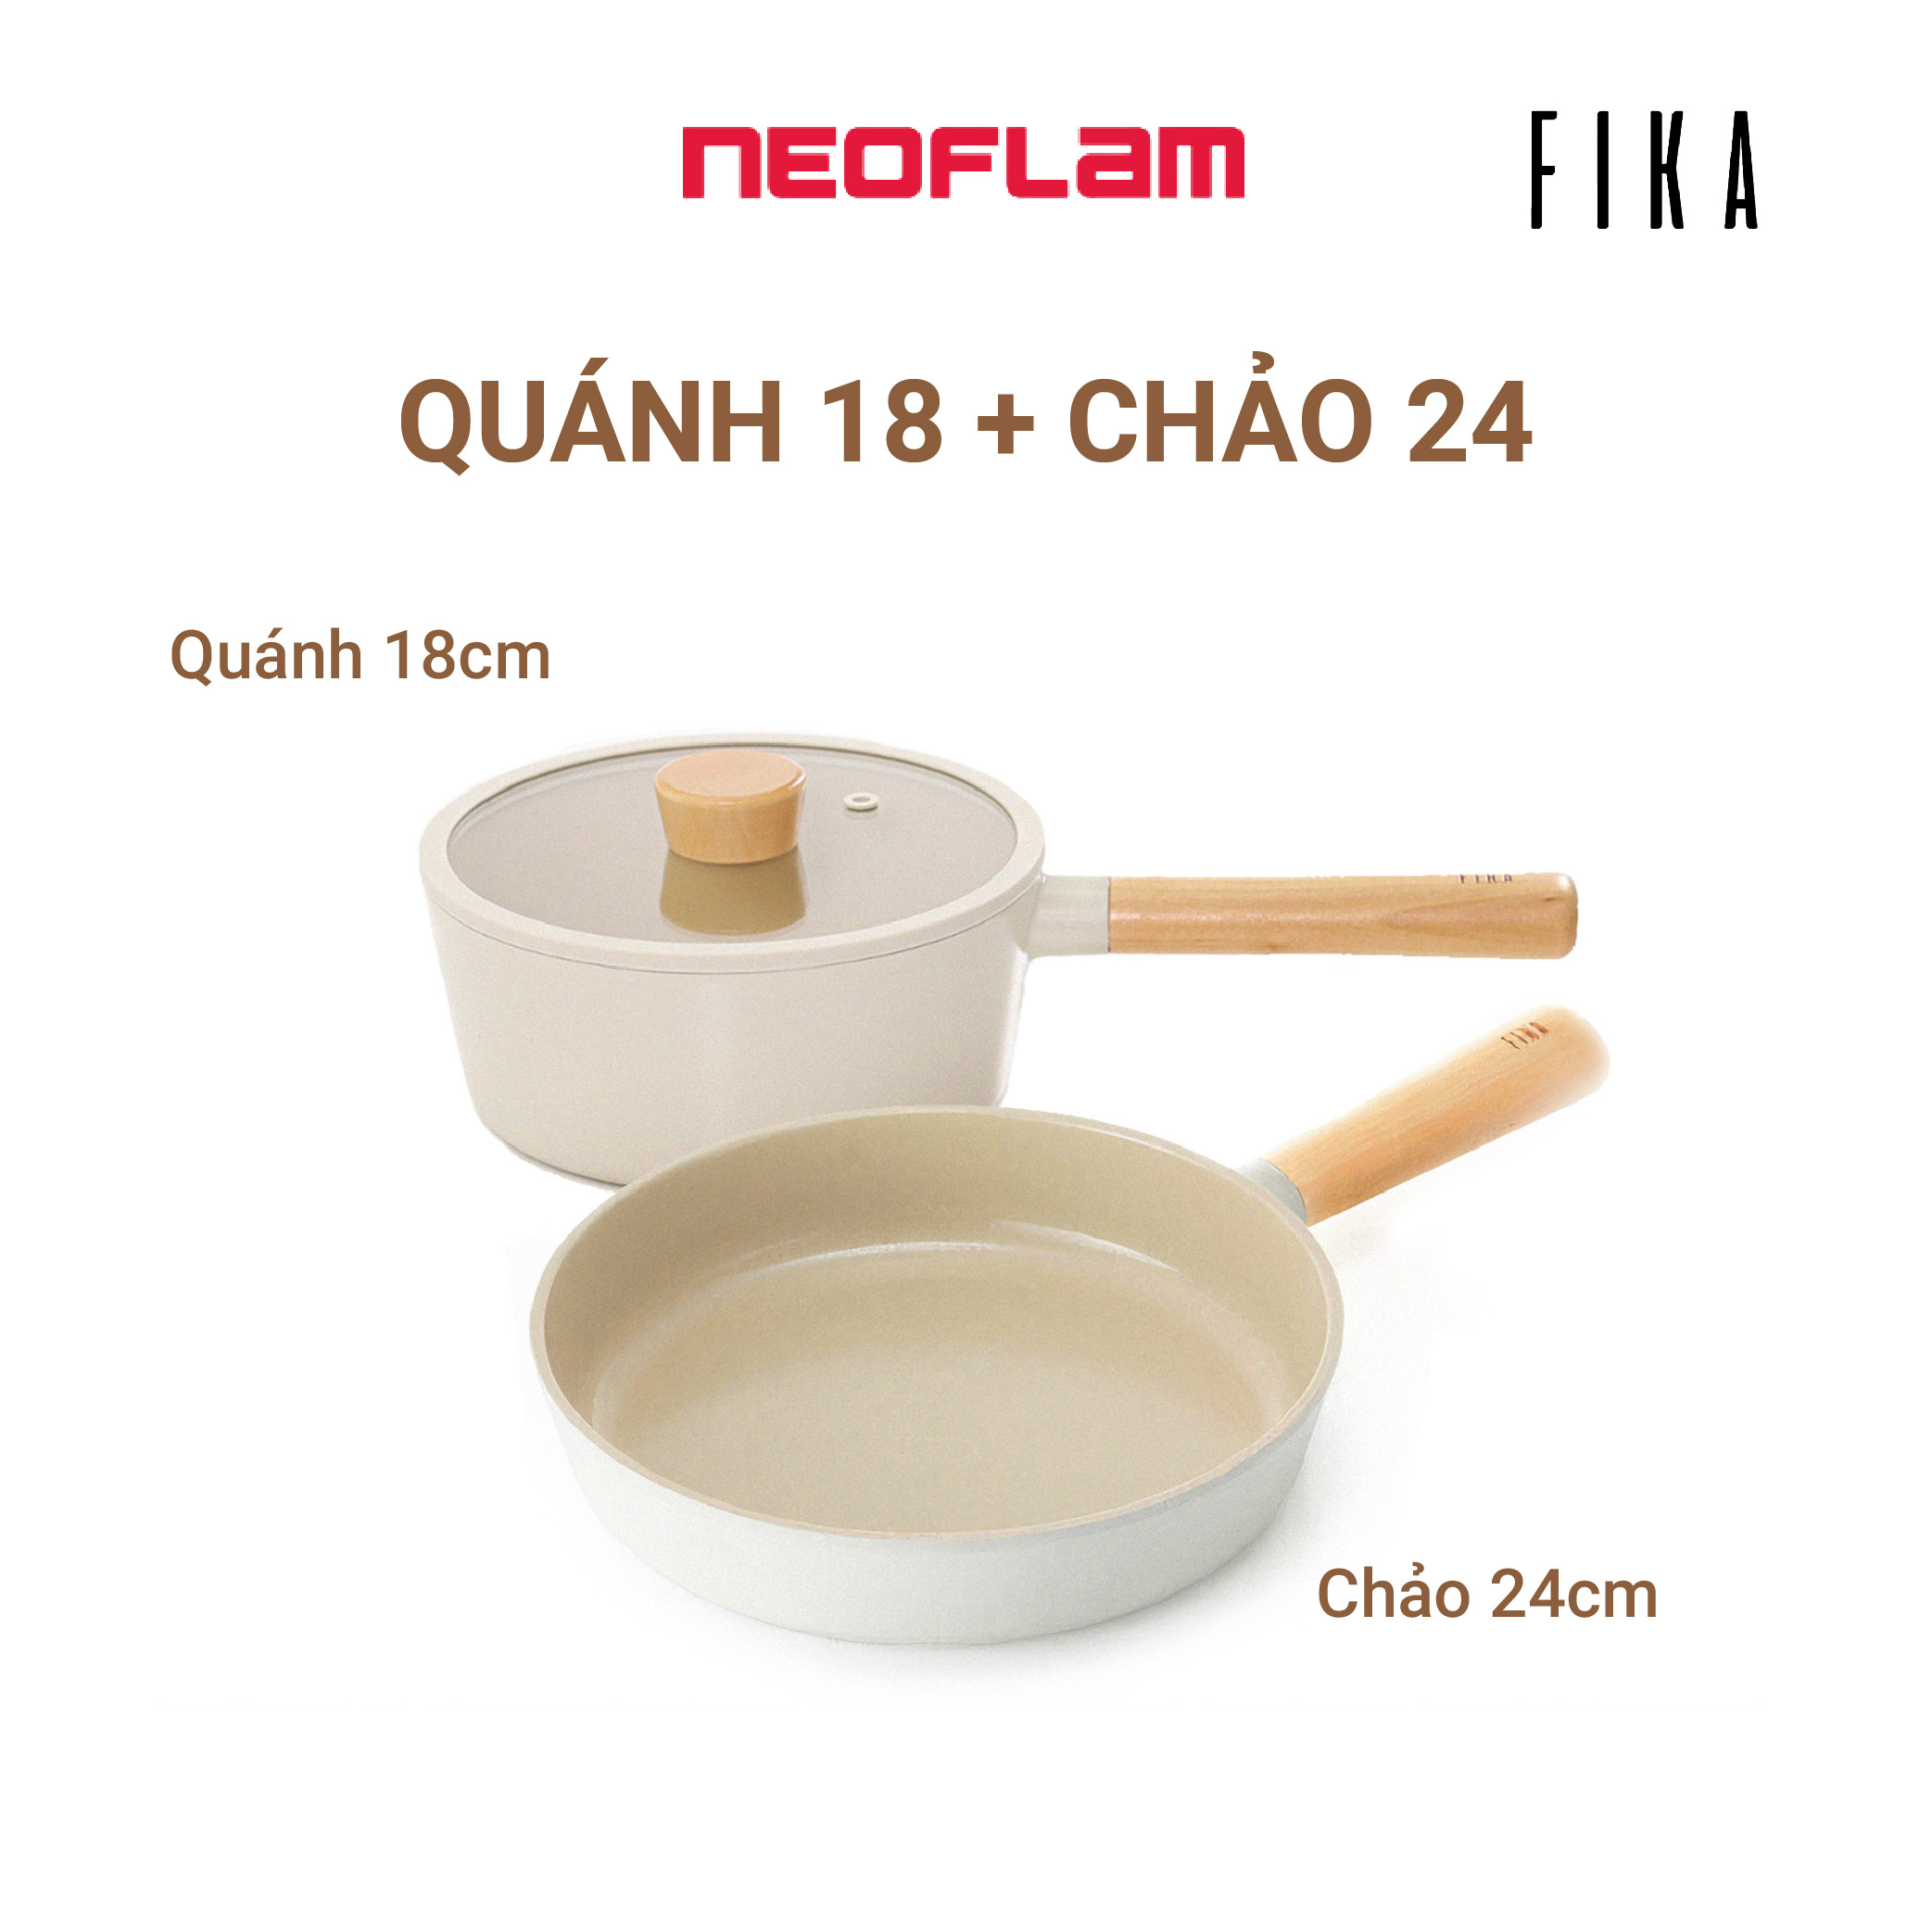 [Hàng chính hãng] Bộ 2 nồi, chảo chống dính bếp từ FIKA NEOFLAM: Nồi sâu (quánh)18cm & Chảo chiên 24cm. Made in Korea